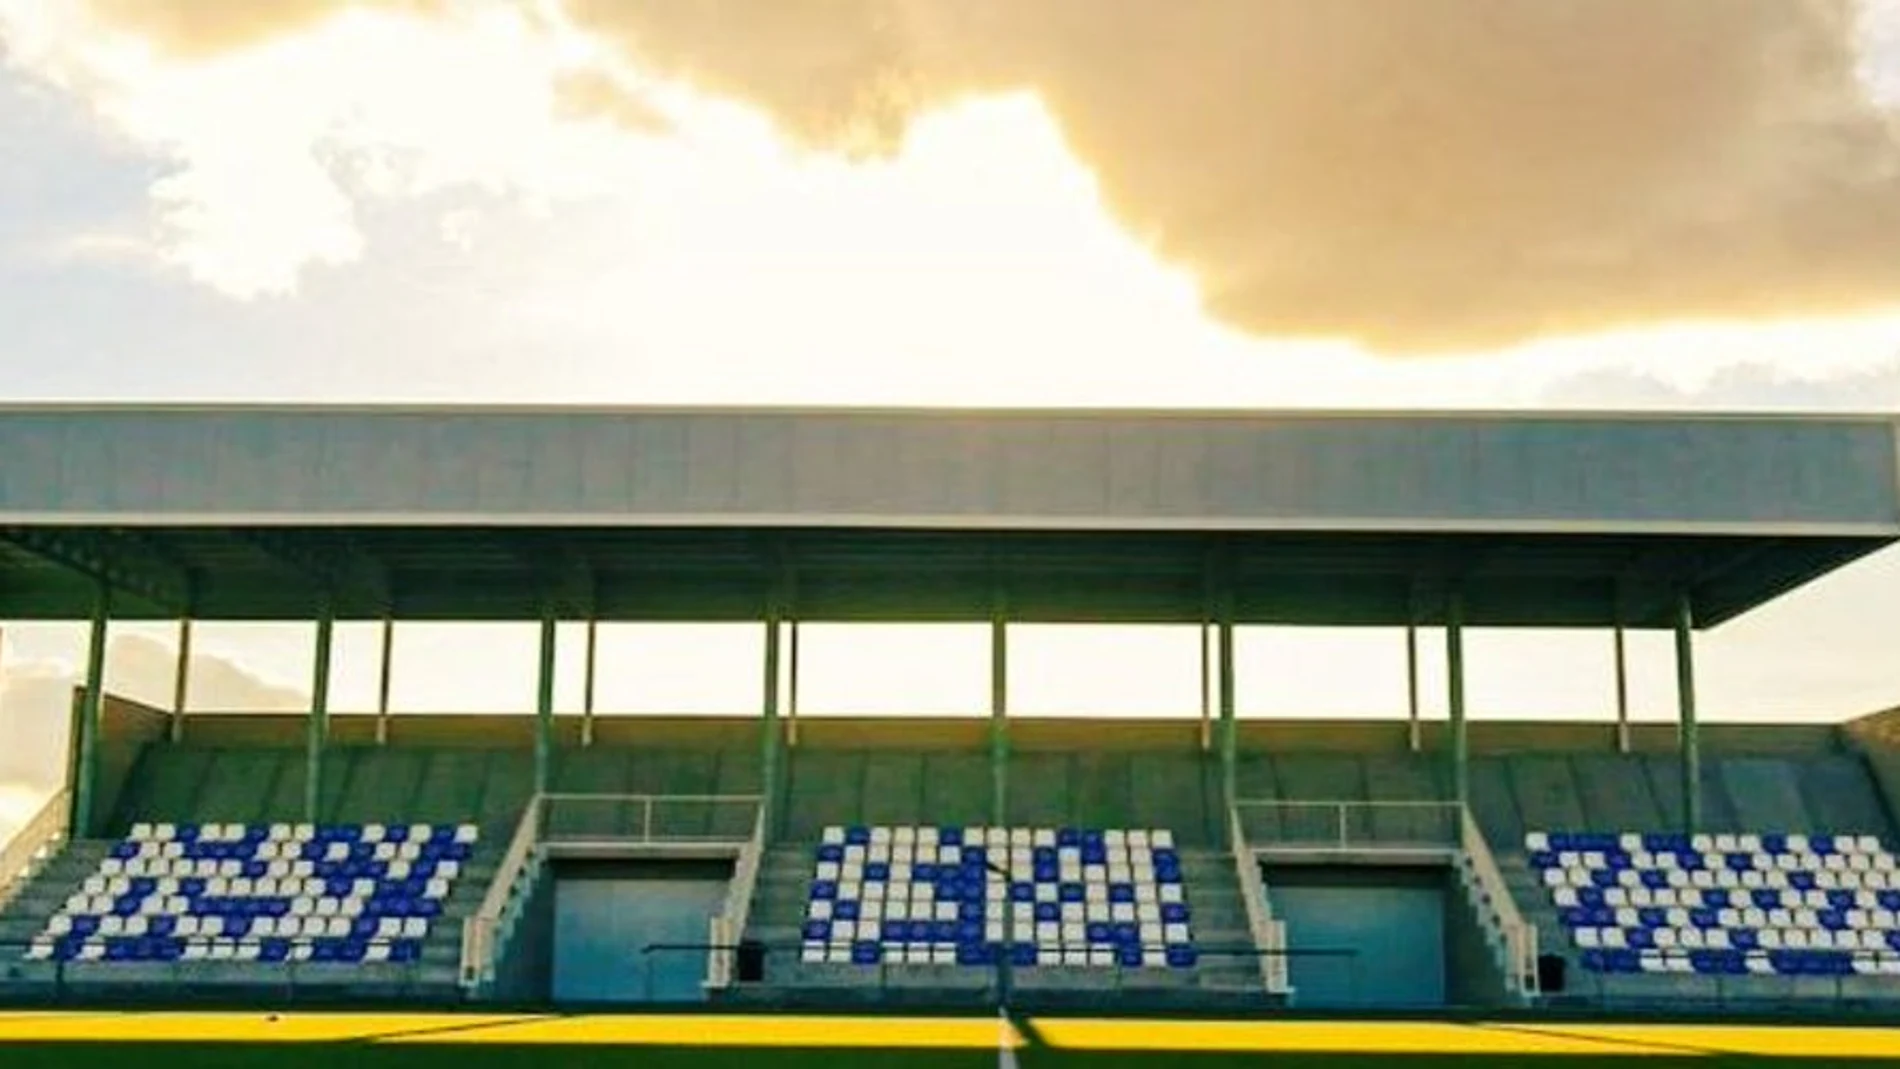 Estadio de Fútbol Municipal "Ángel Luengo Garro" - Noblejas (Toledo)